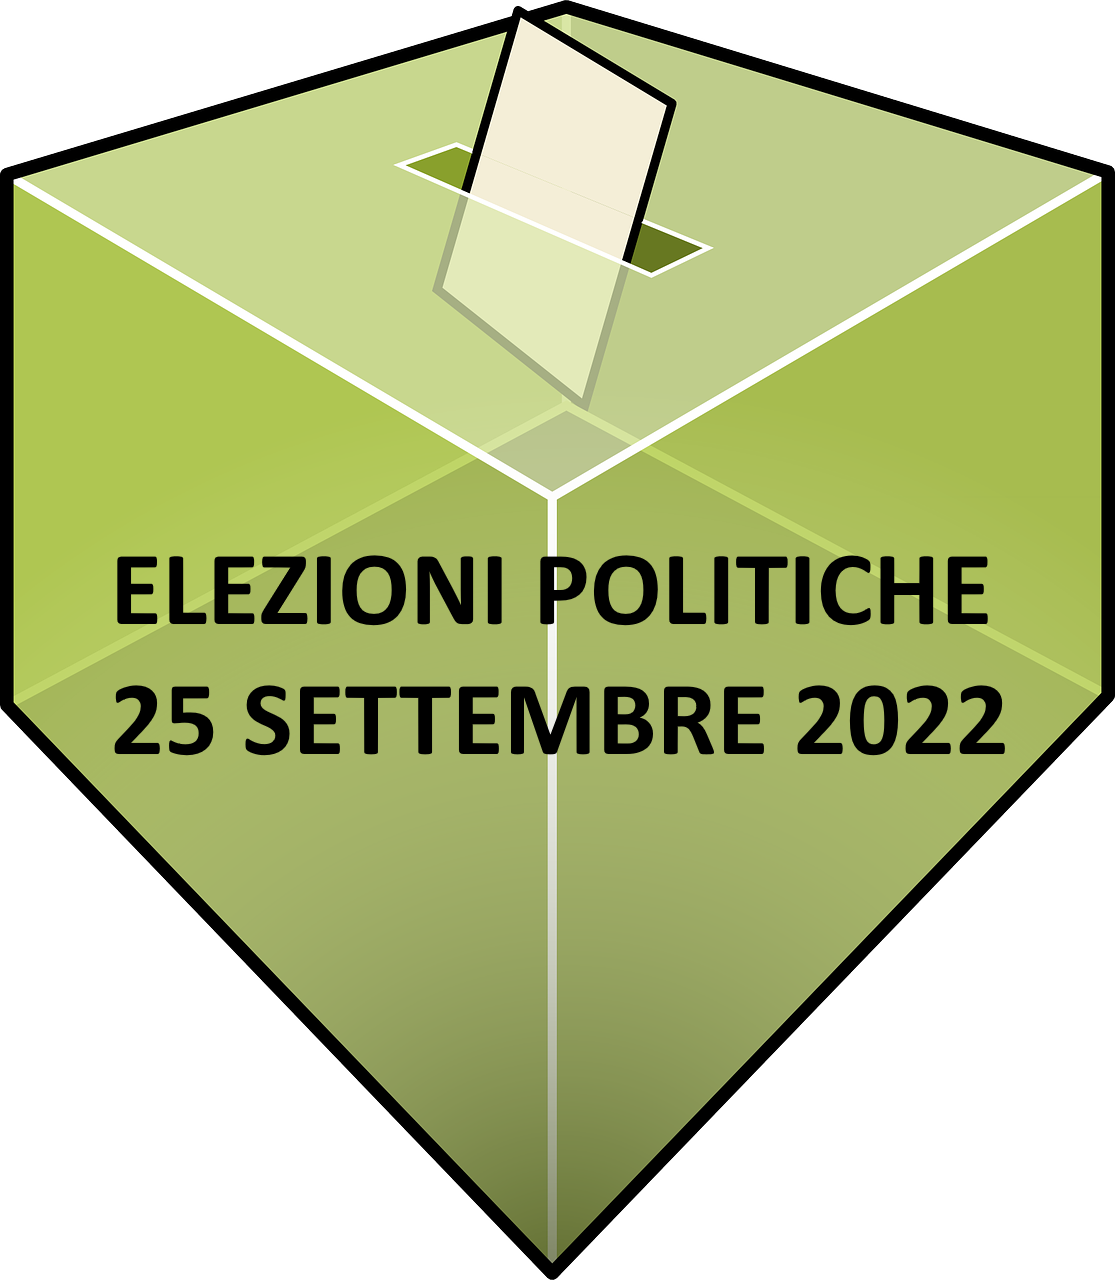 Elezioni 2022 - Manifesto dei candidati al Senato della Repubblica